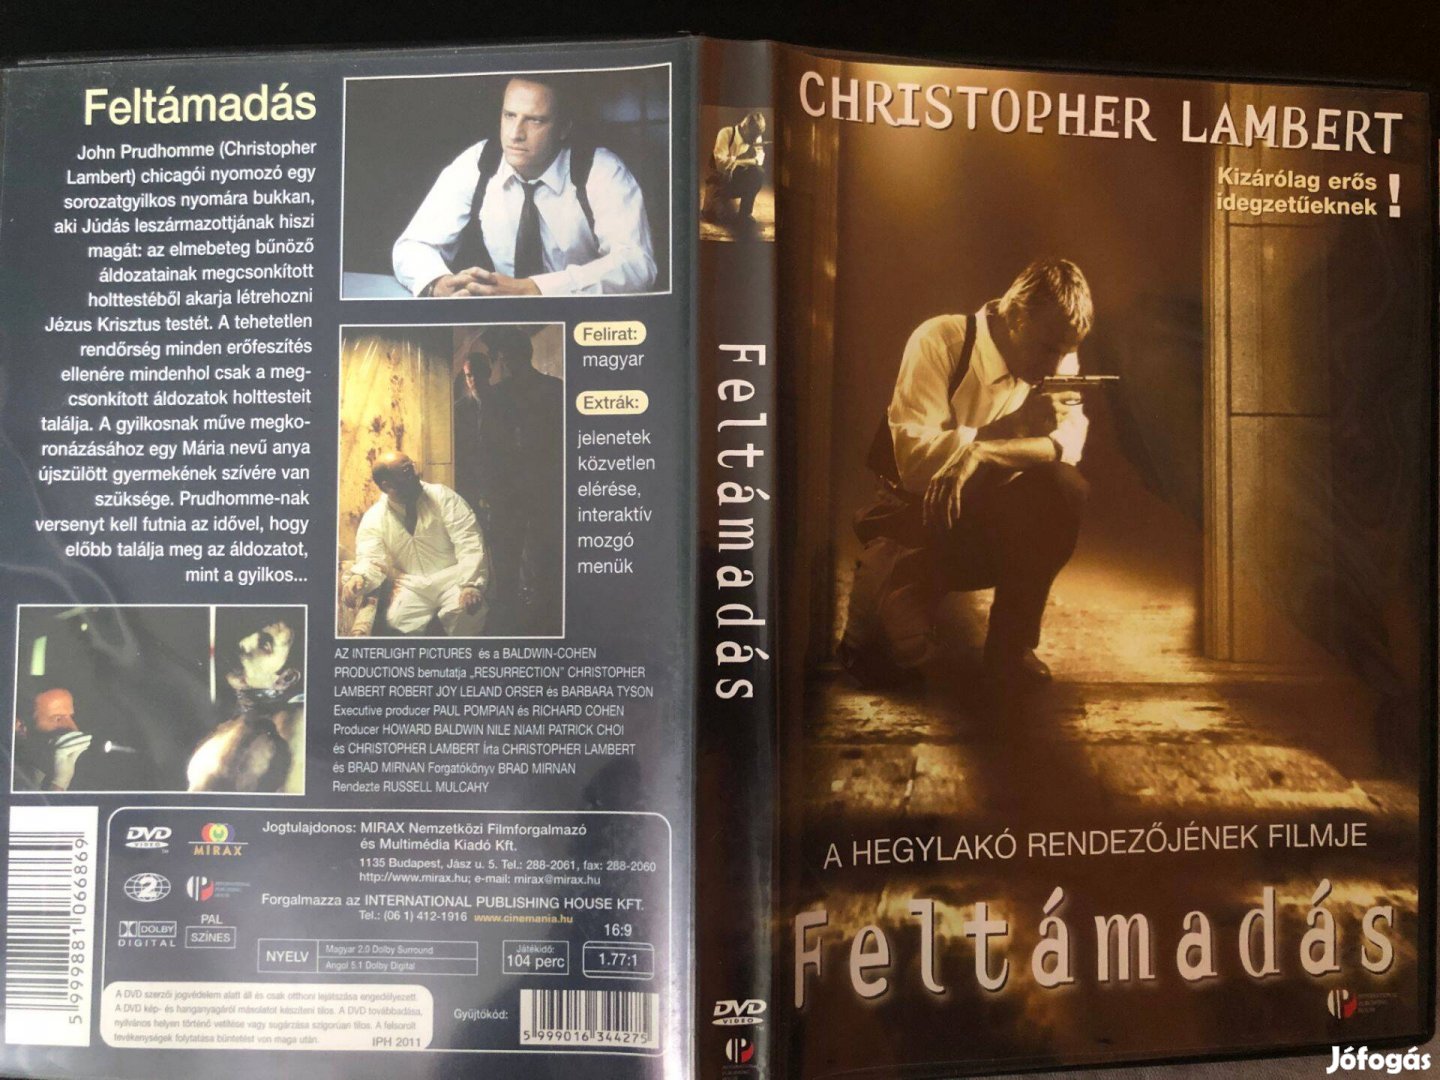 Feltámadás (karcmentes, Christopher Lambert, IPH kiadás) DVD